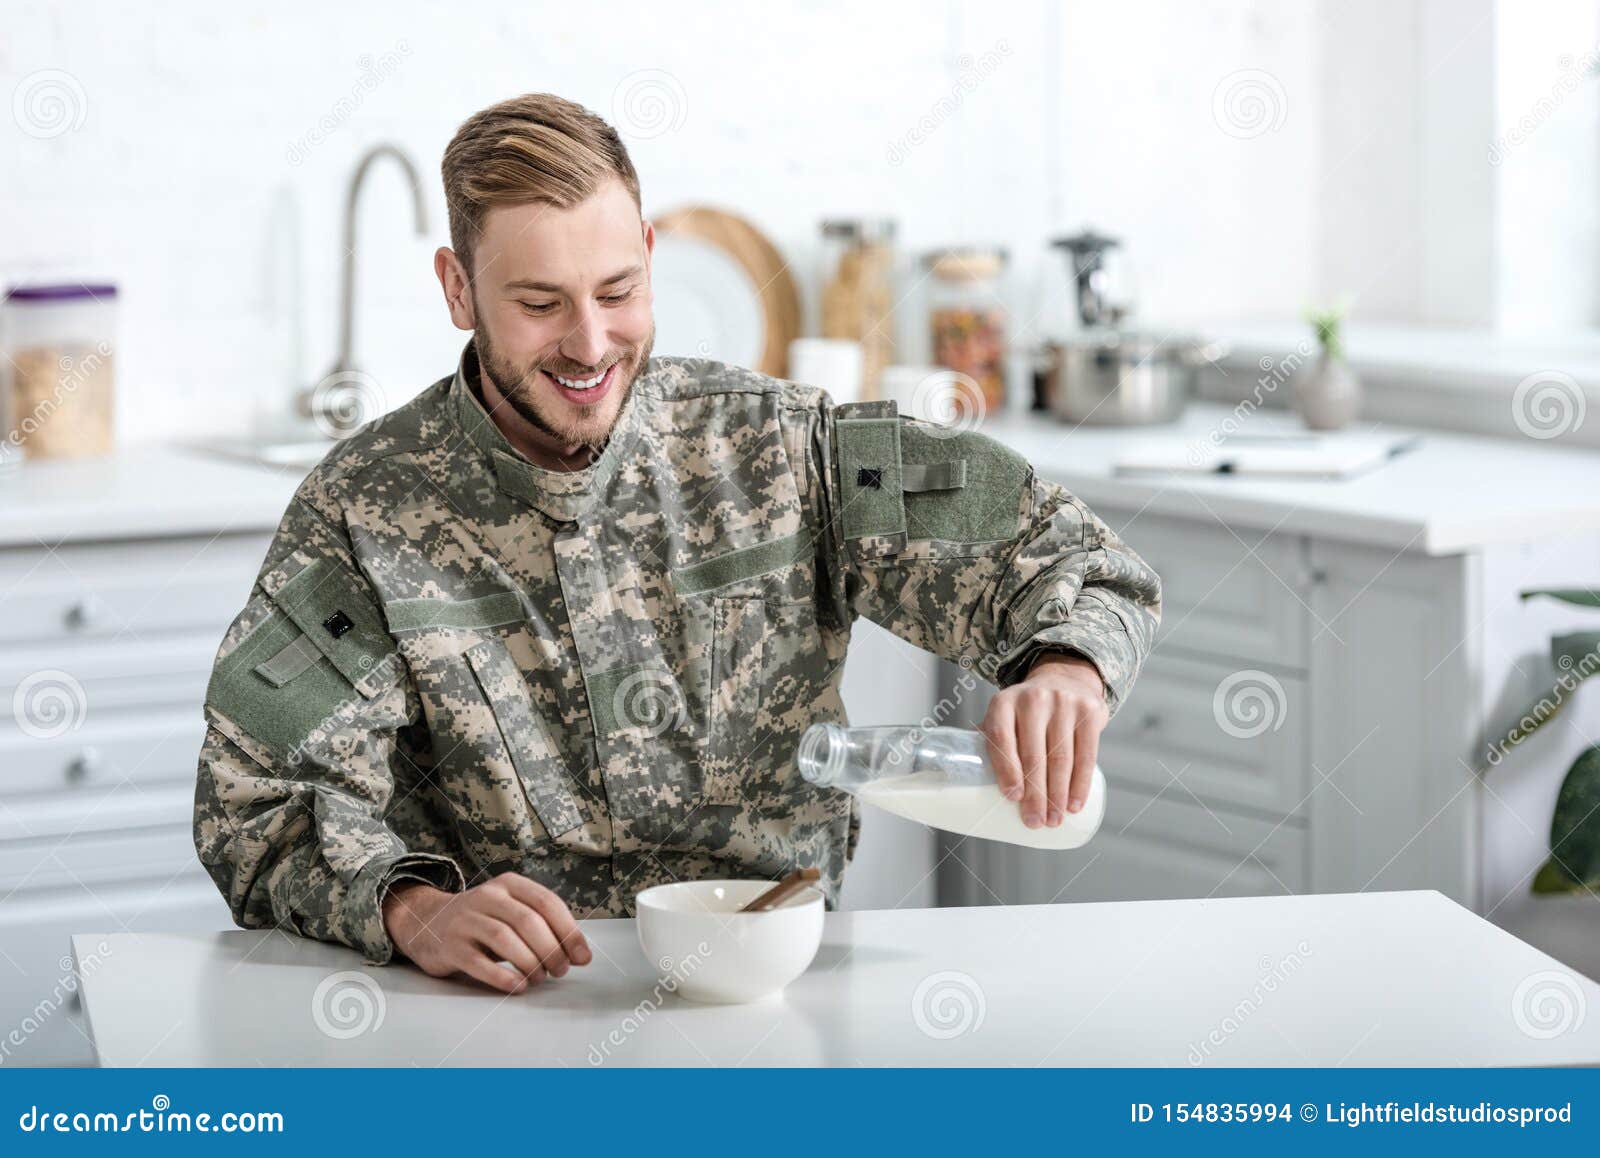 Армейское молоко. Молоко в армии. Военные молоко фото. Military smile stock photo.